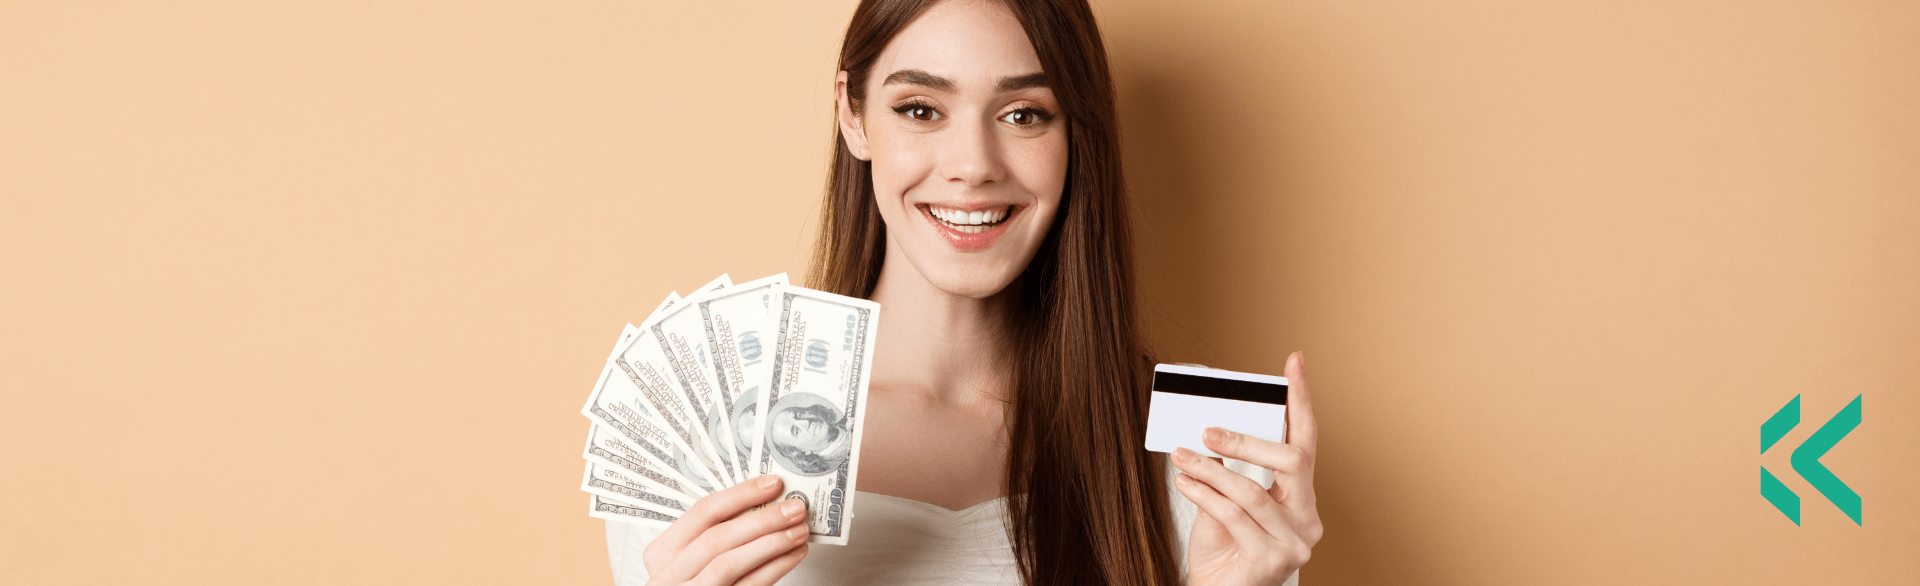 O Crédito Consignado e o Cartão de Crédito: Comparação de Custos